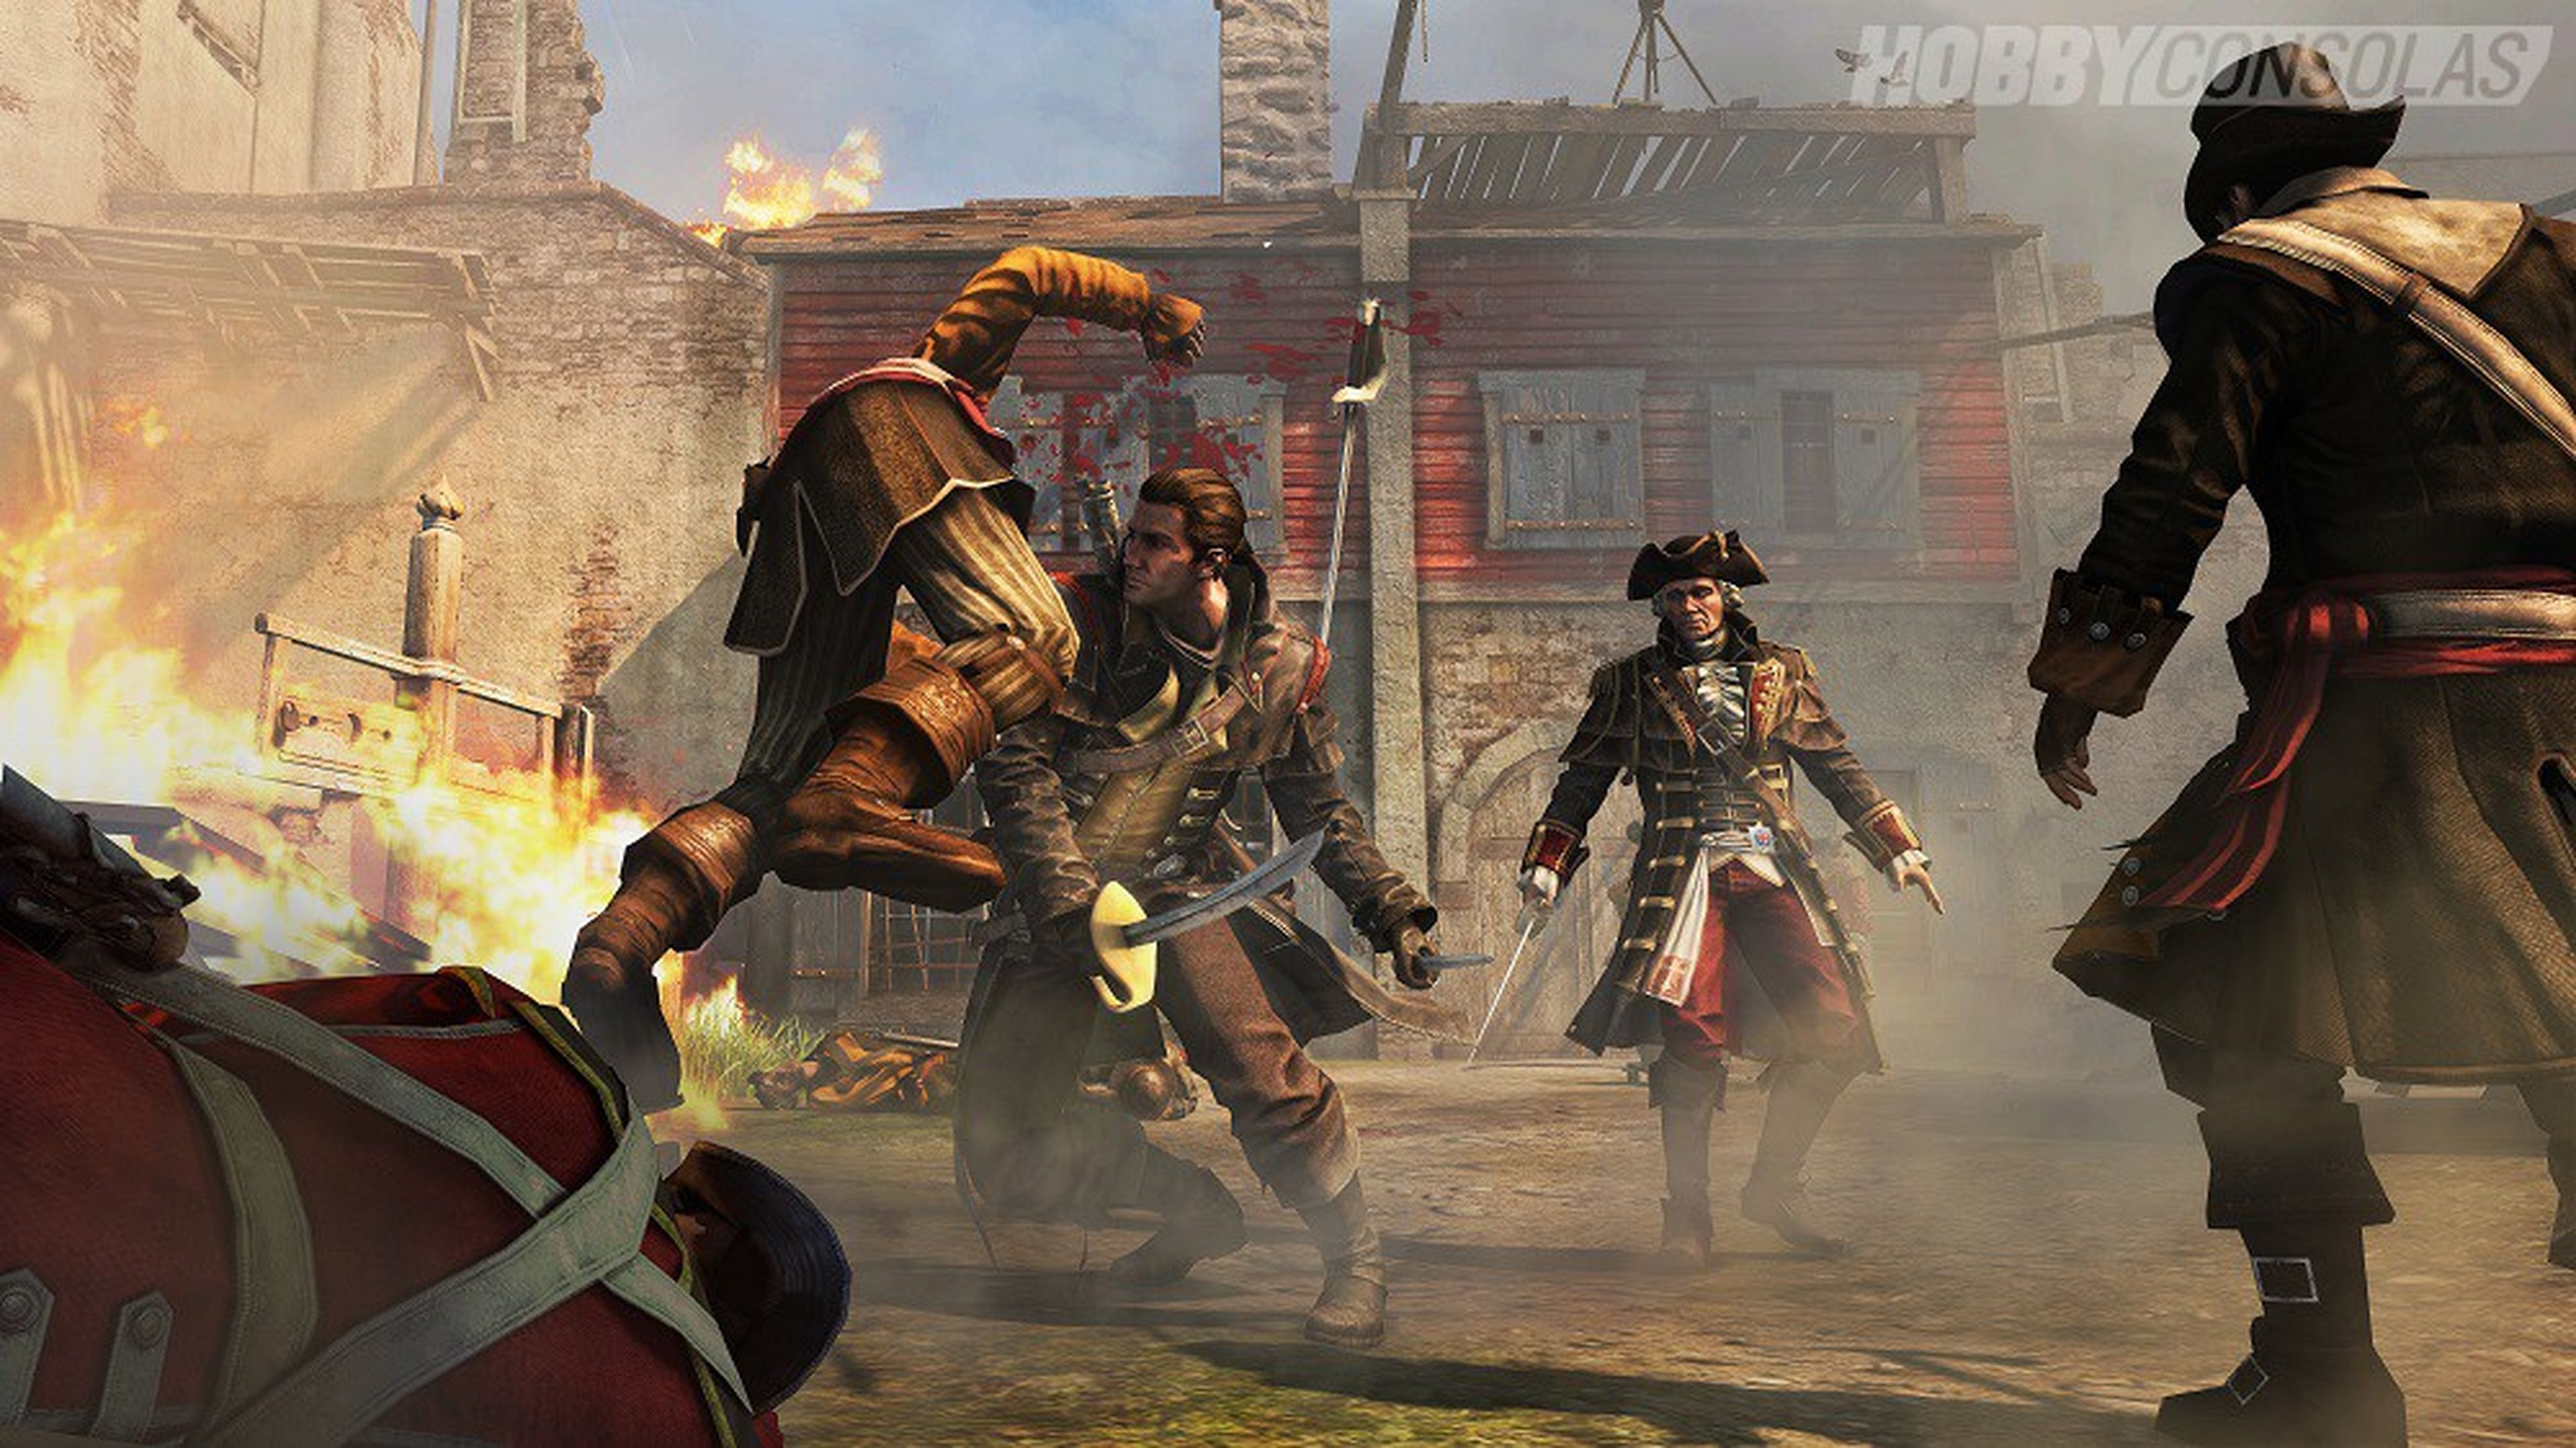 Análisis de Assassin's Creed Rogue para PS3 y 360